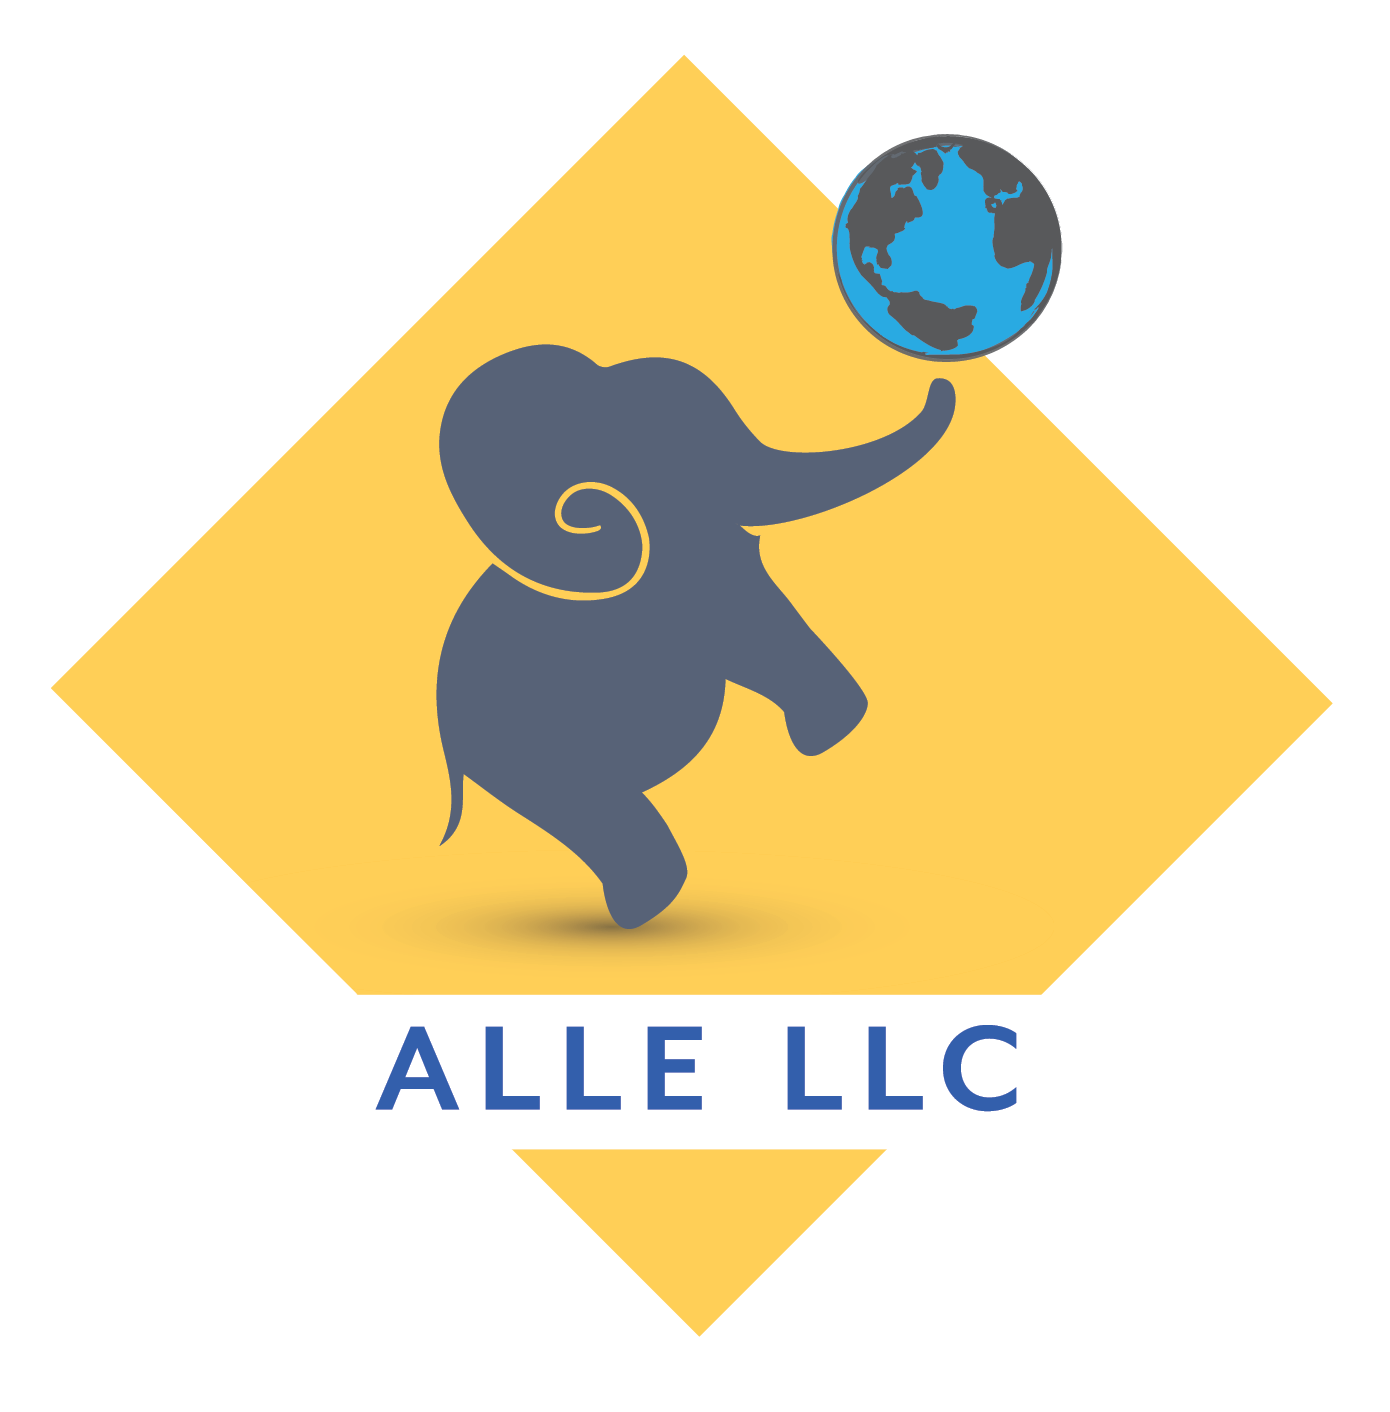 Alle LLC Logo- grey elephant on gold background holding up a globe